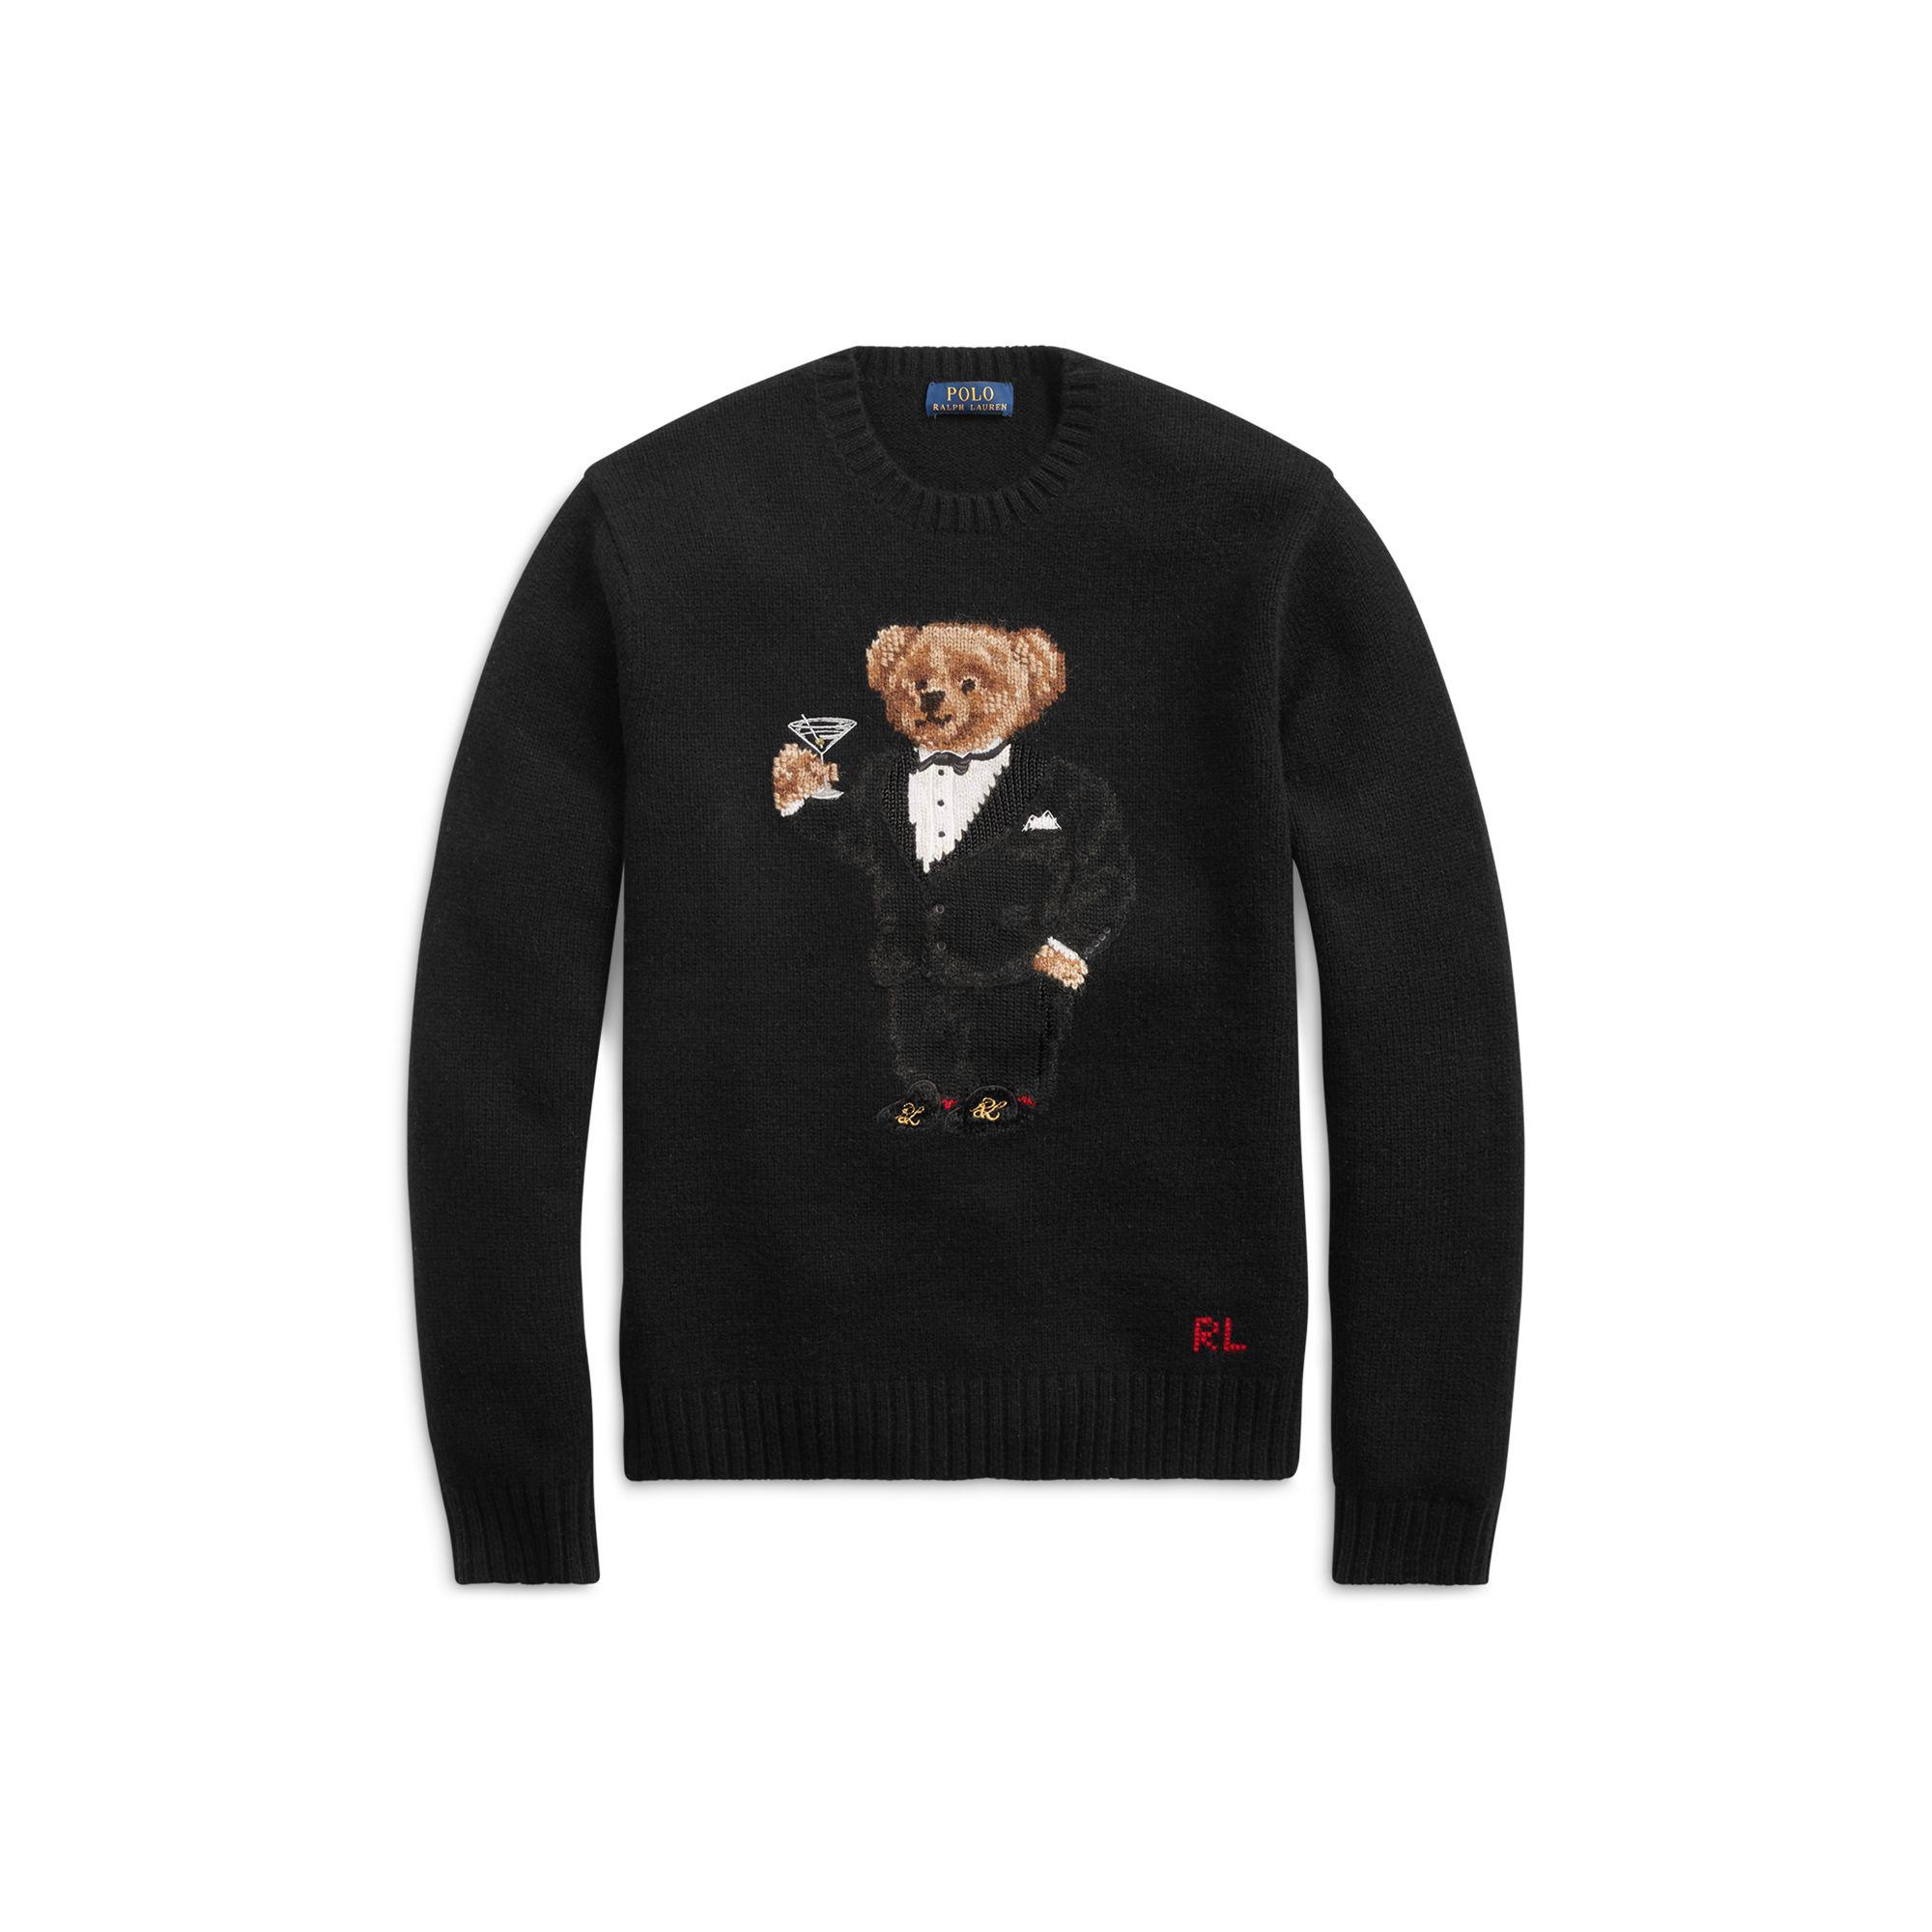 mens polo teddy bear sweater